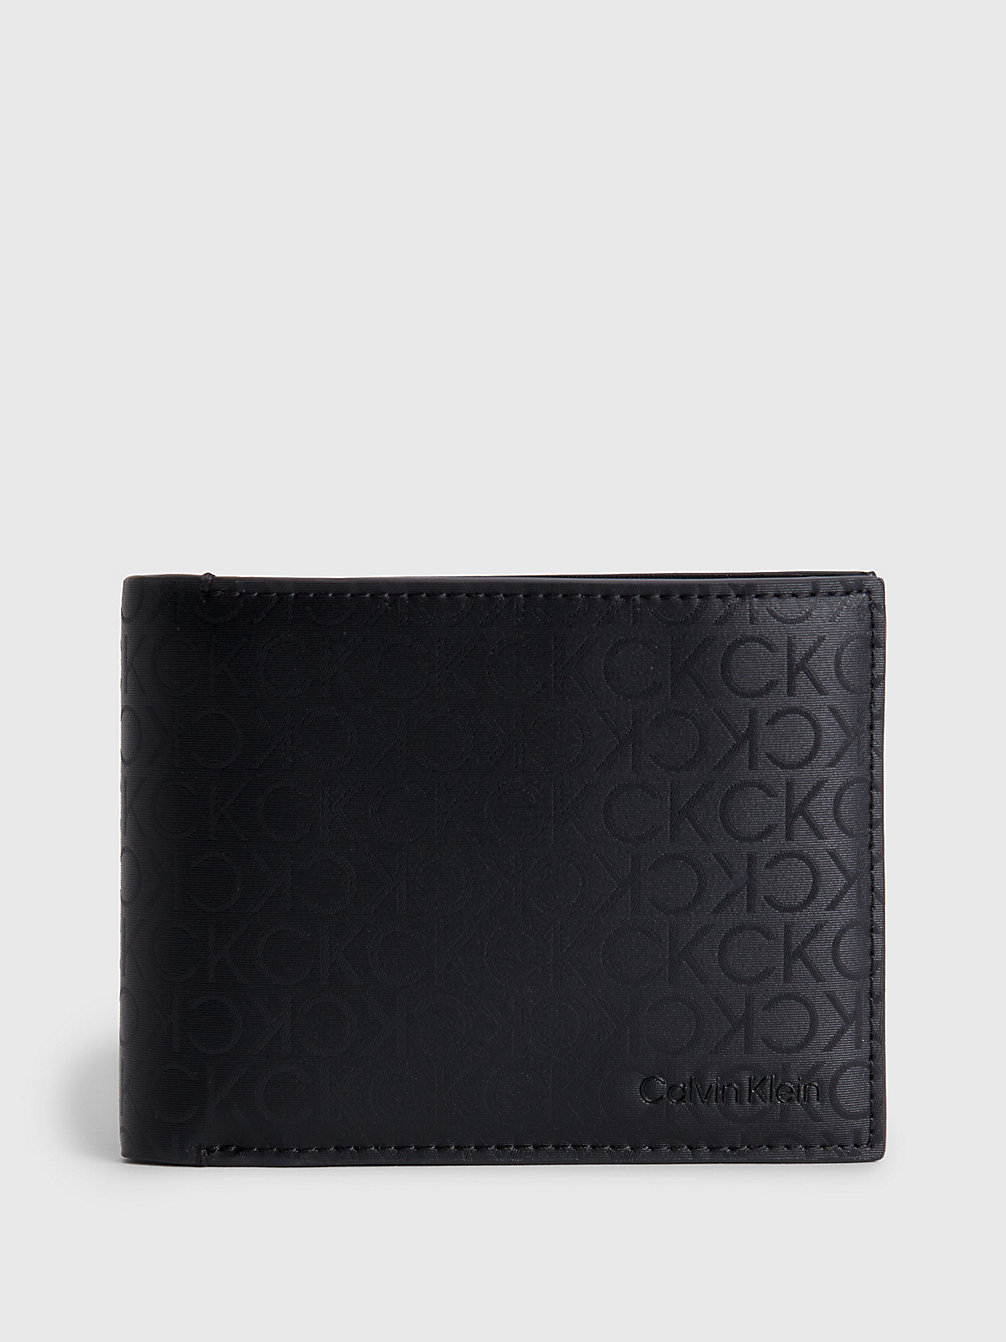 INDUSTRIAL MONO BLACK > Dreifach Faltbares Rfid-Portemonnaie Aus Recycling-Material > undefined men - Calvin Klein